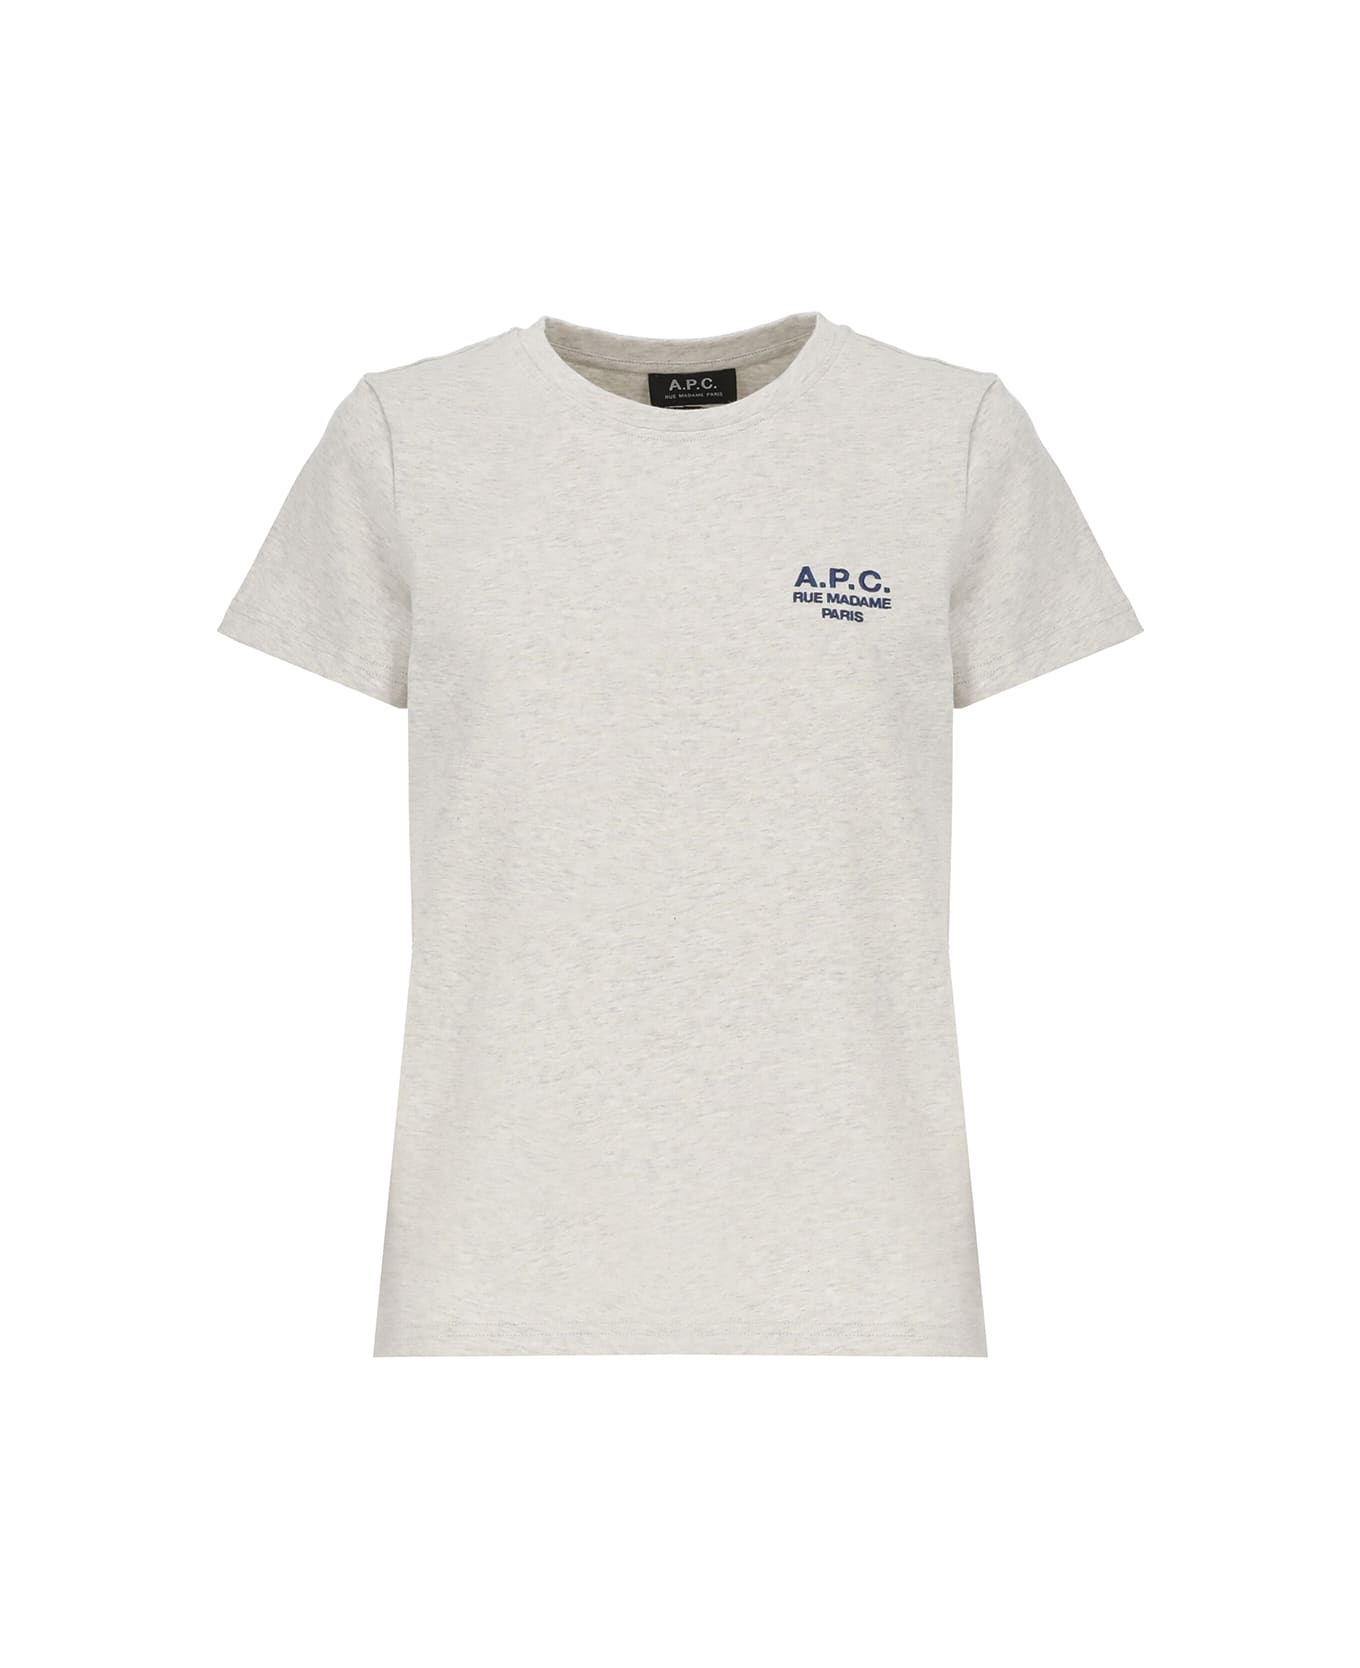 A.P.C. Denise Cotton Crew-neck T-shirt - Grey Tシャツ